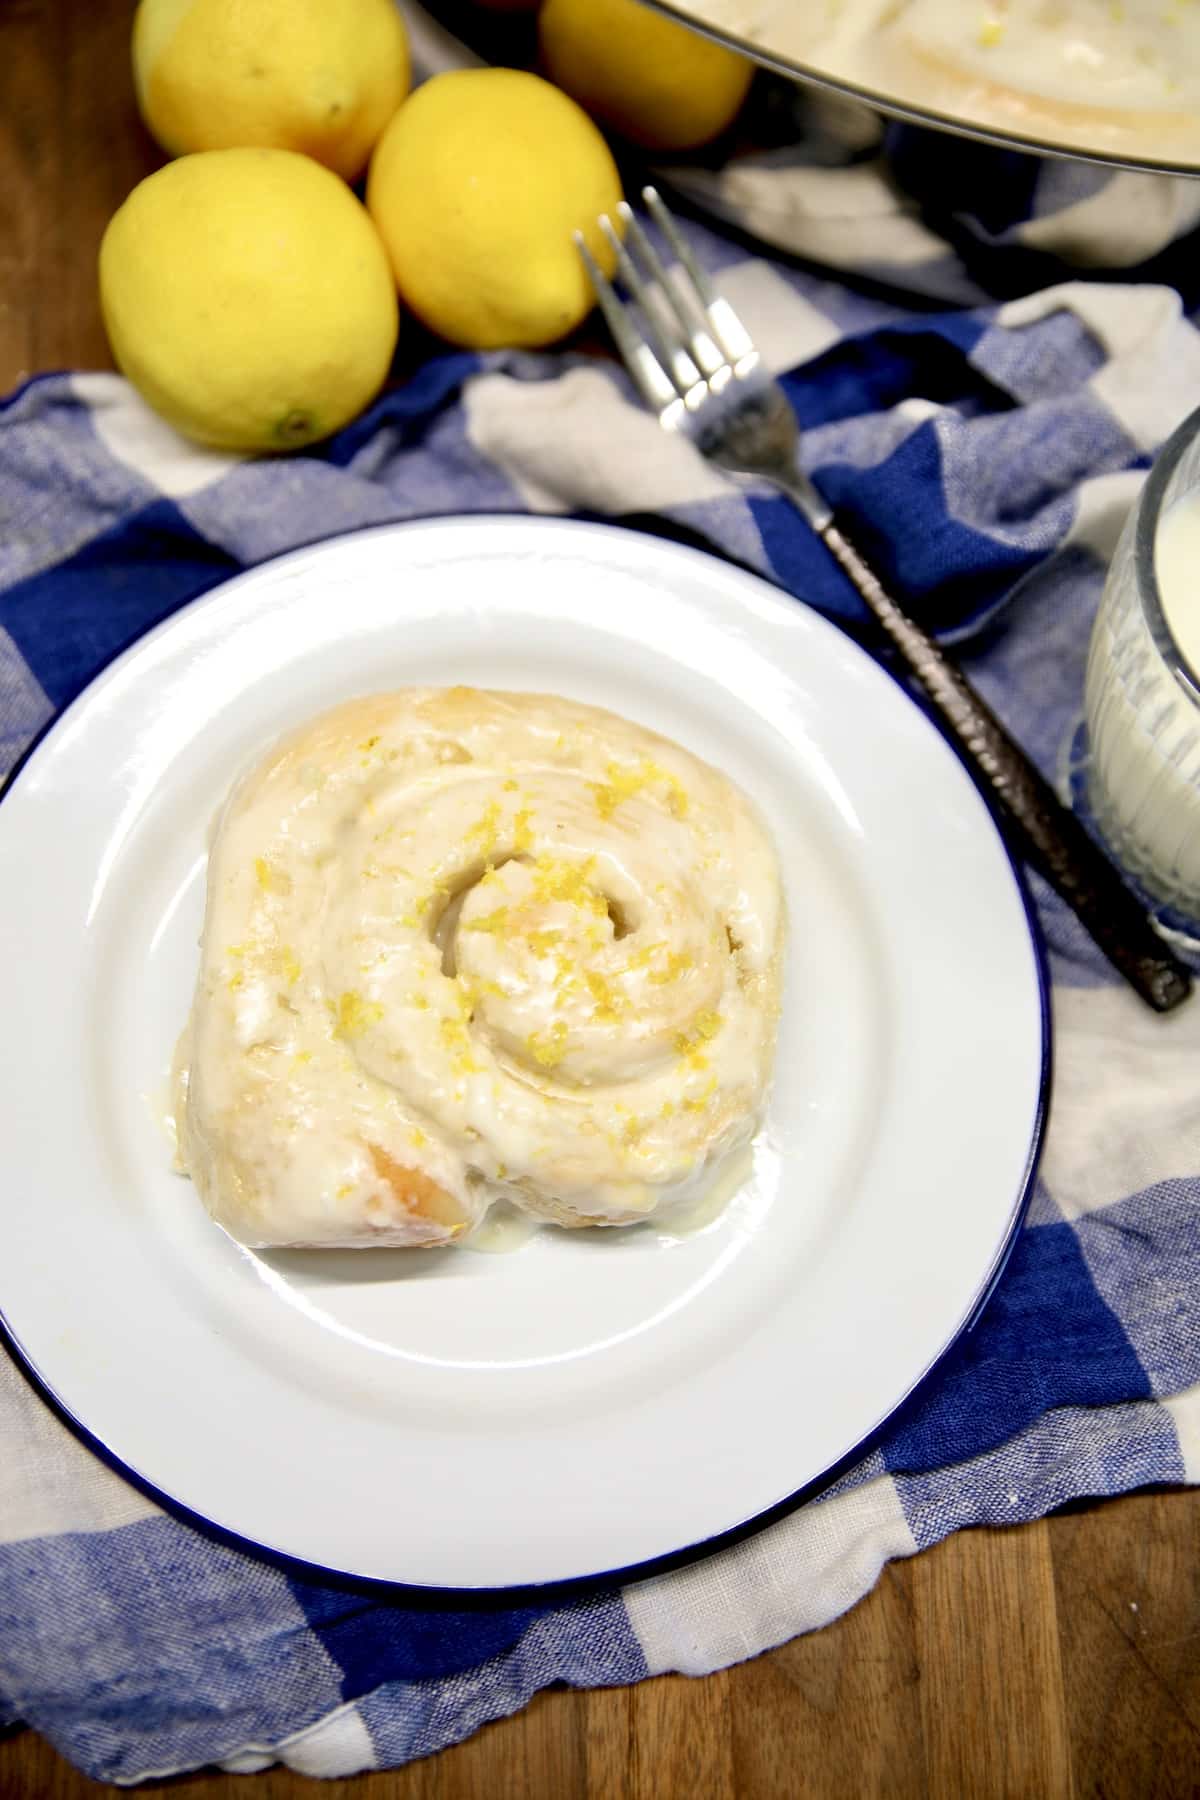 Lemon sweet roll on a plate.